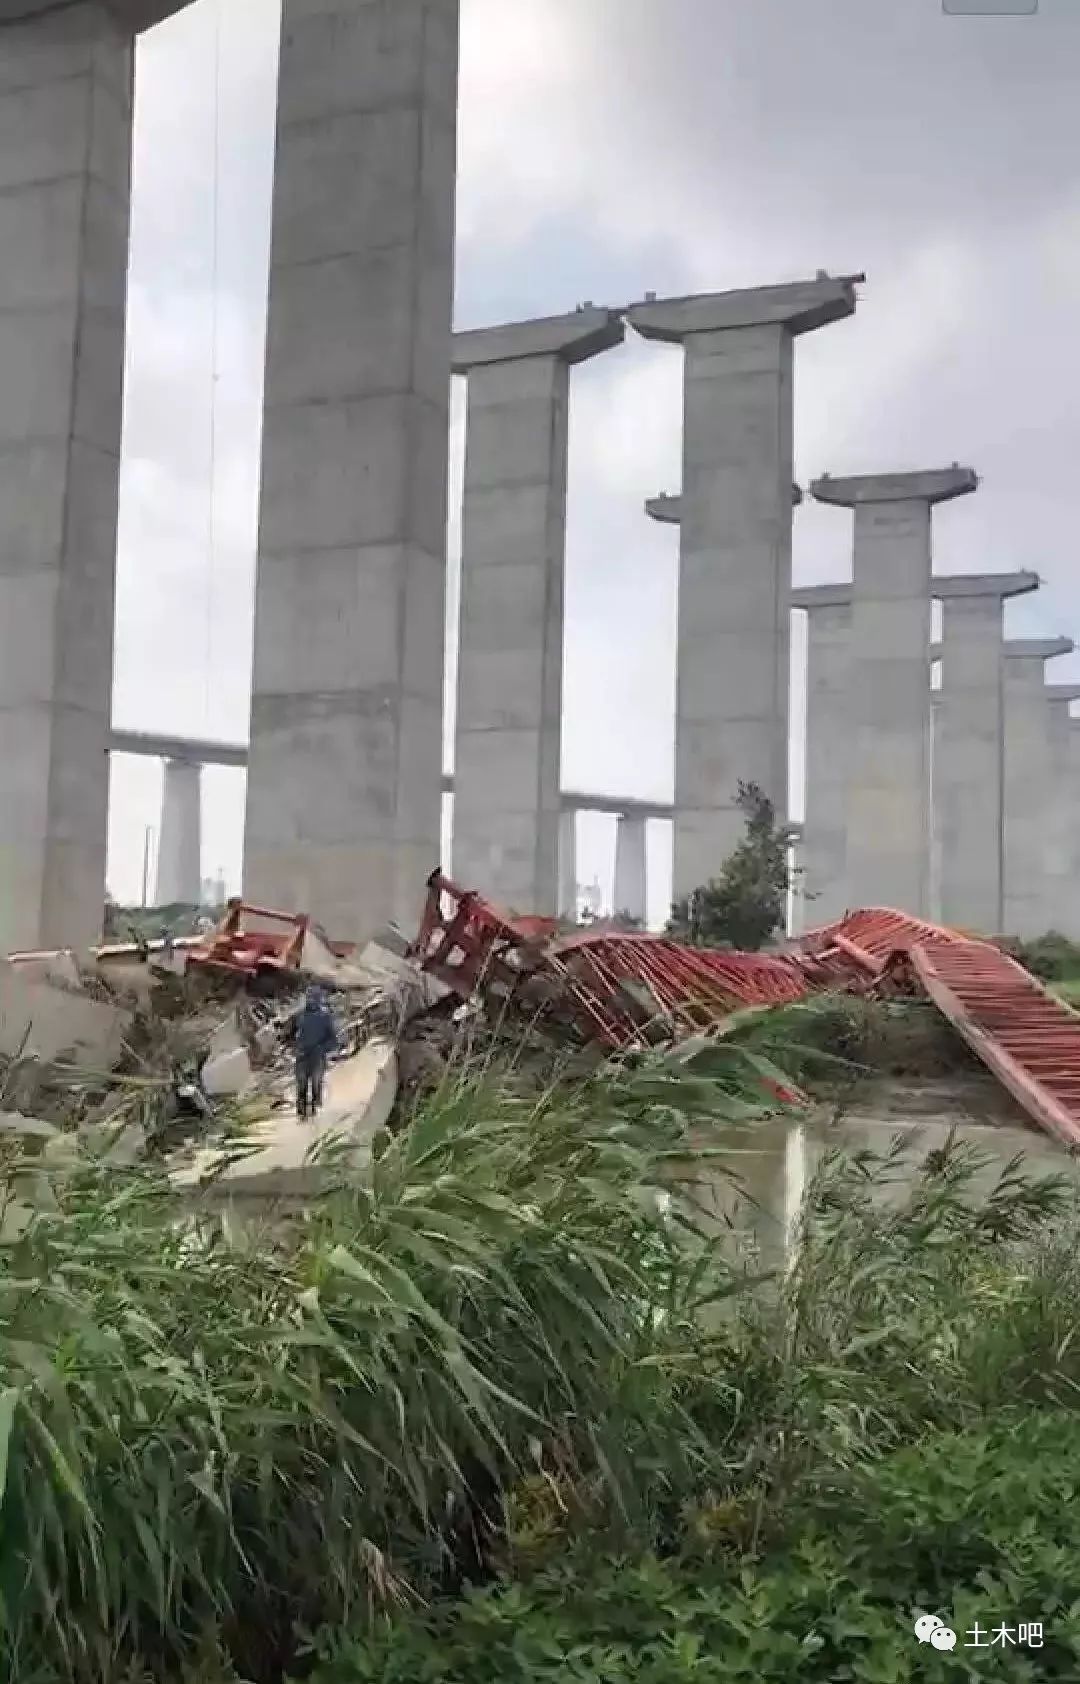 广州一桥梁被船撞断5车坠桥5人遇难 当地成立事故调查组 肇事船责任人已被控制-荆楚网-湖北日报网